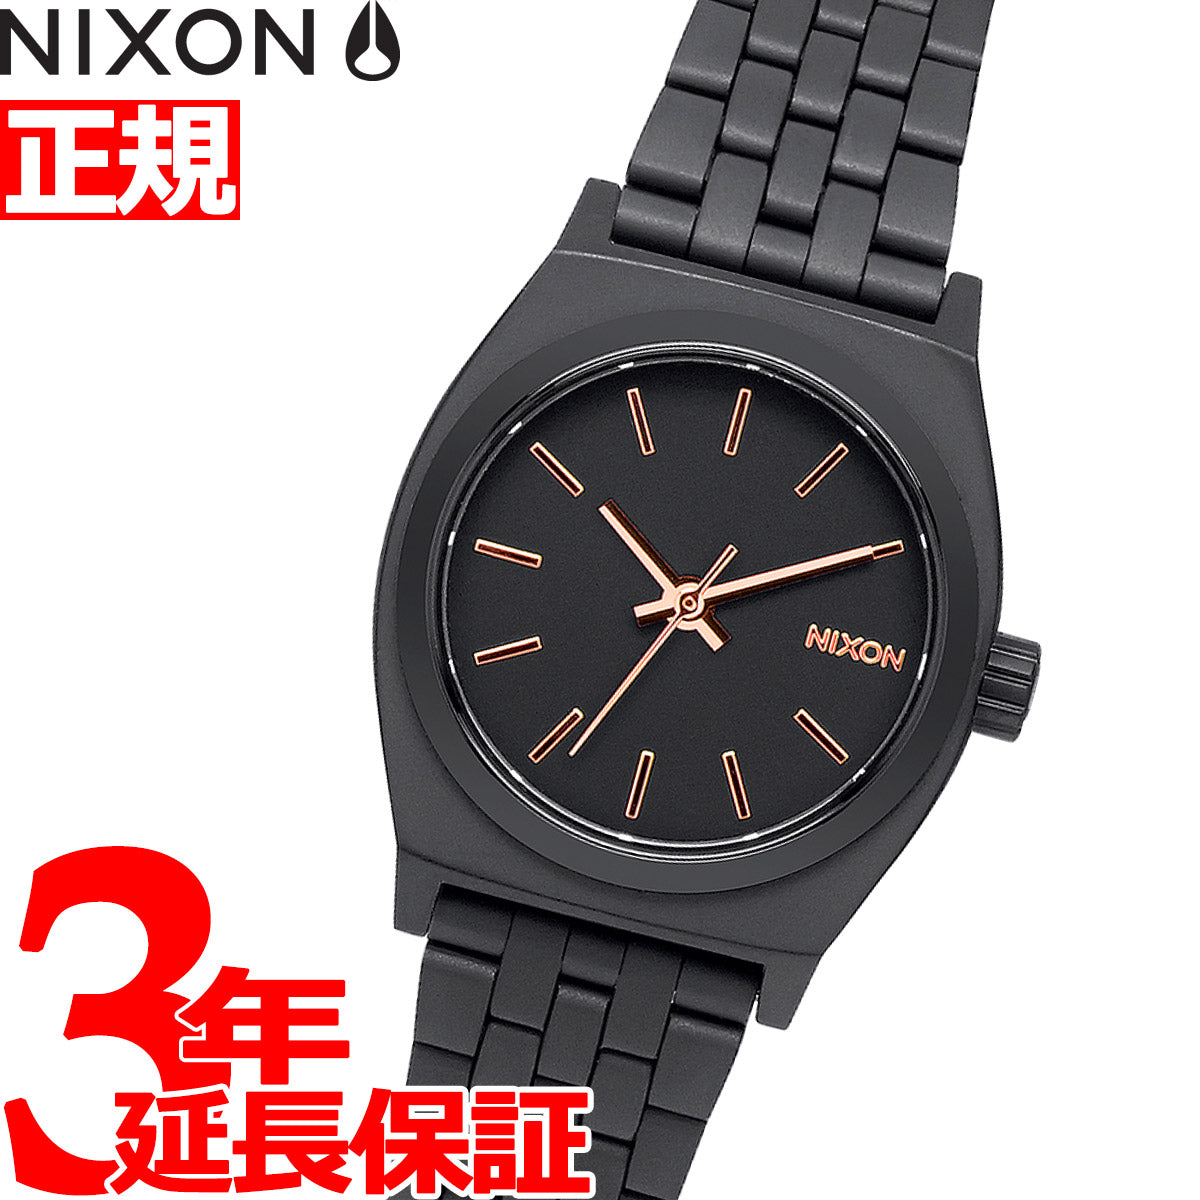 ニクソン NIXON スモールタイムテラー Small Time Teller 腕時計 レディース オールブラック/ローズゴールド A399 –  neel selectshop